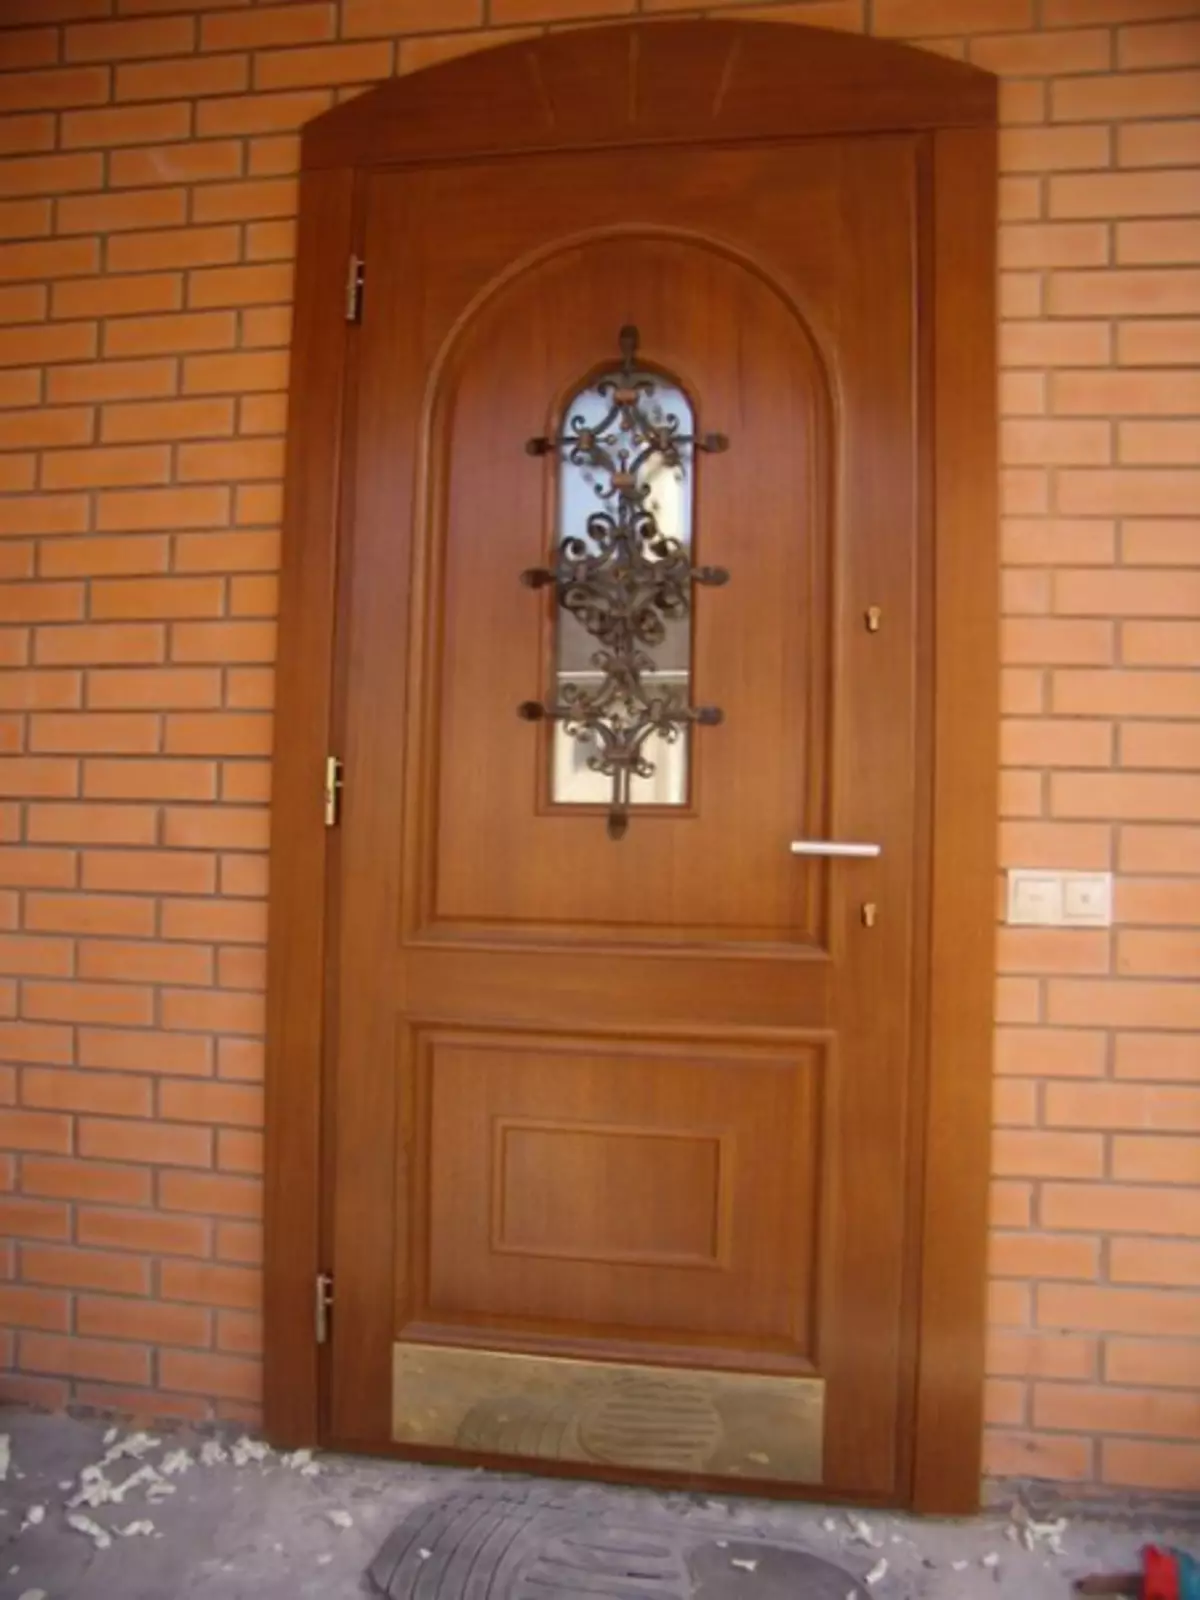 Comment déterminer la qualité des portes d'entrée?